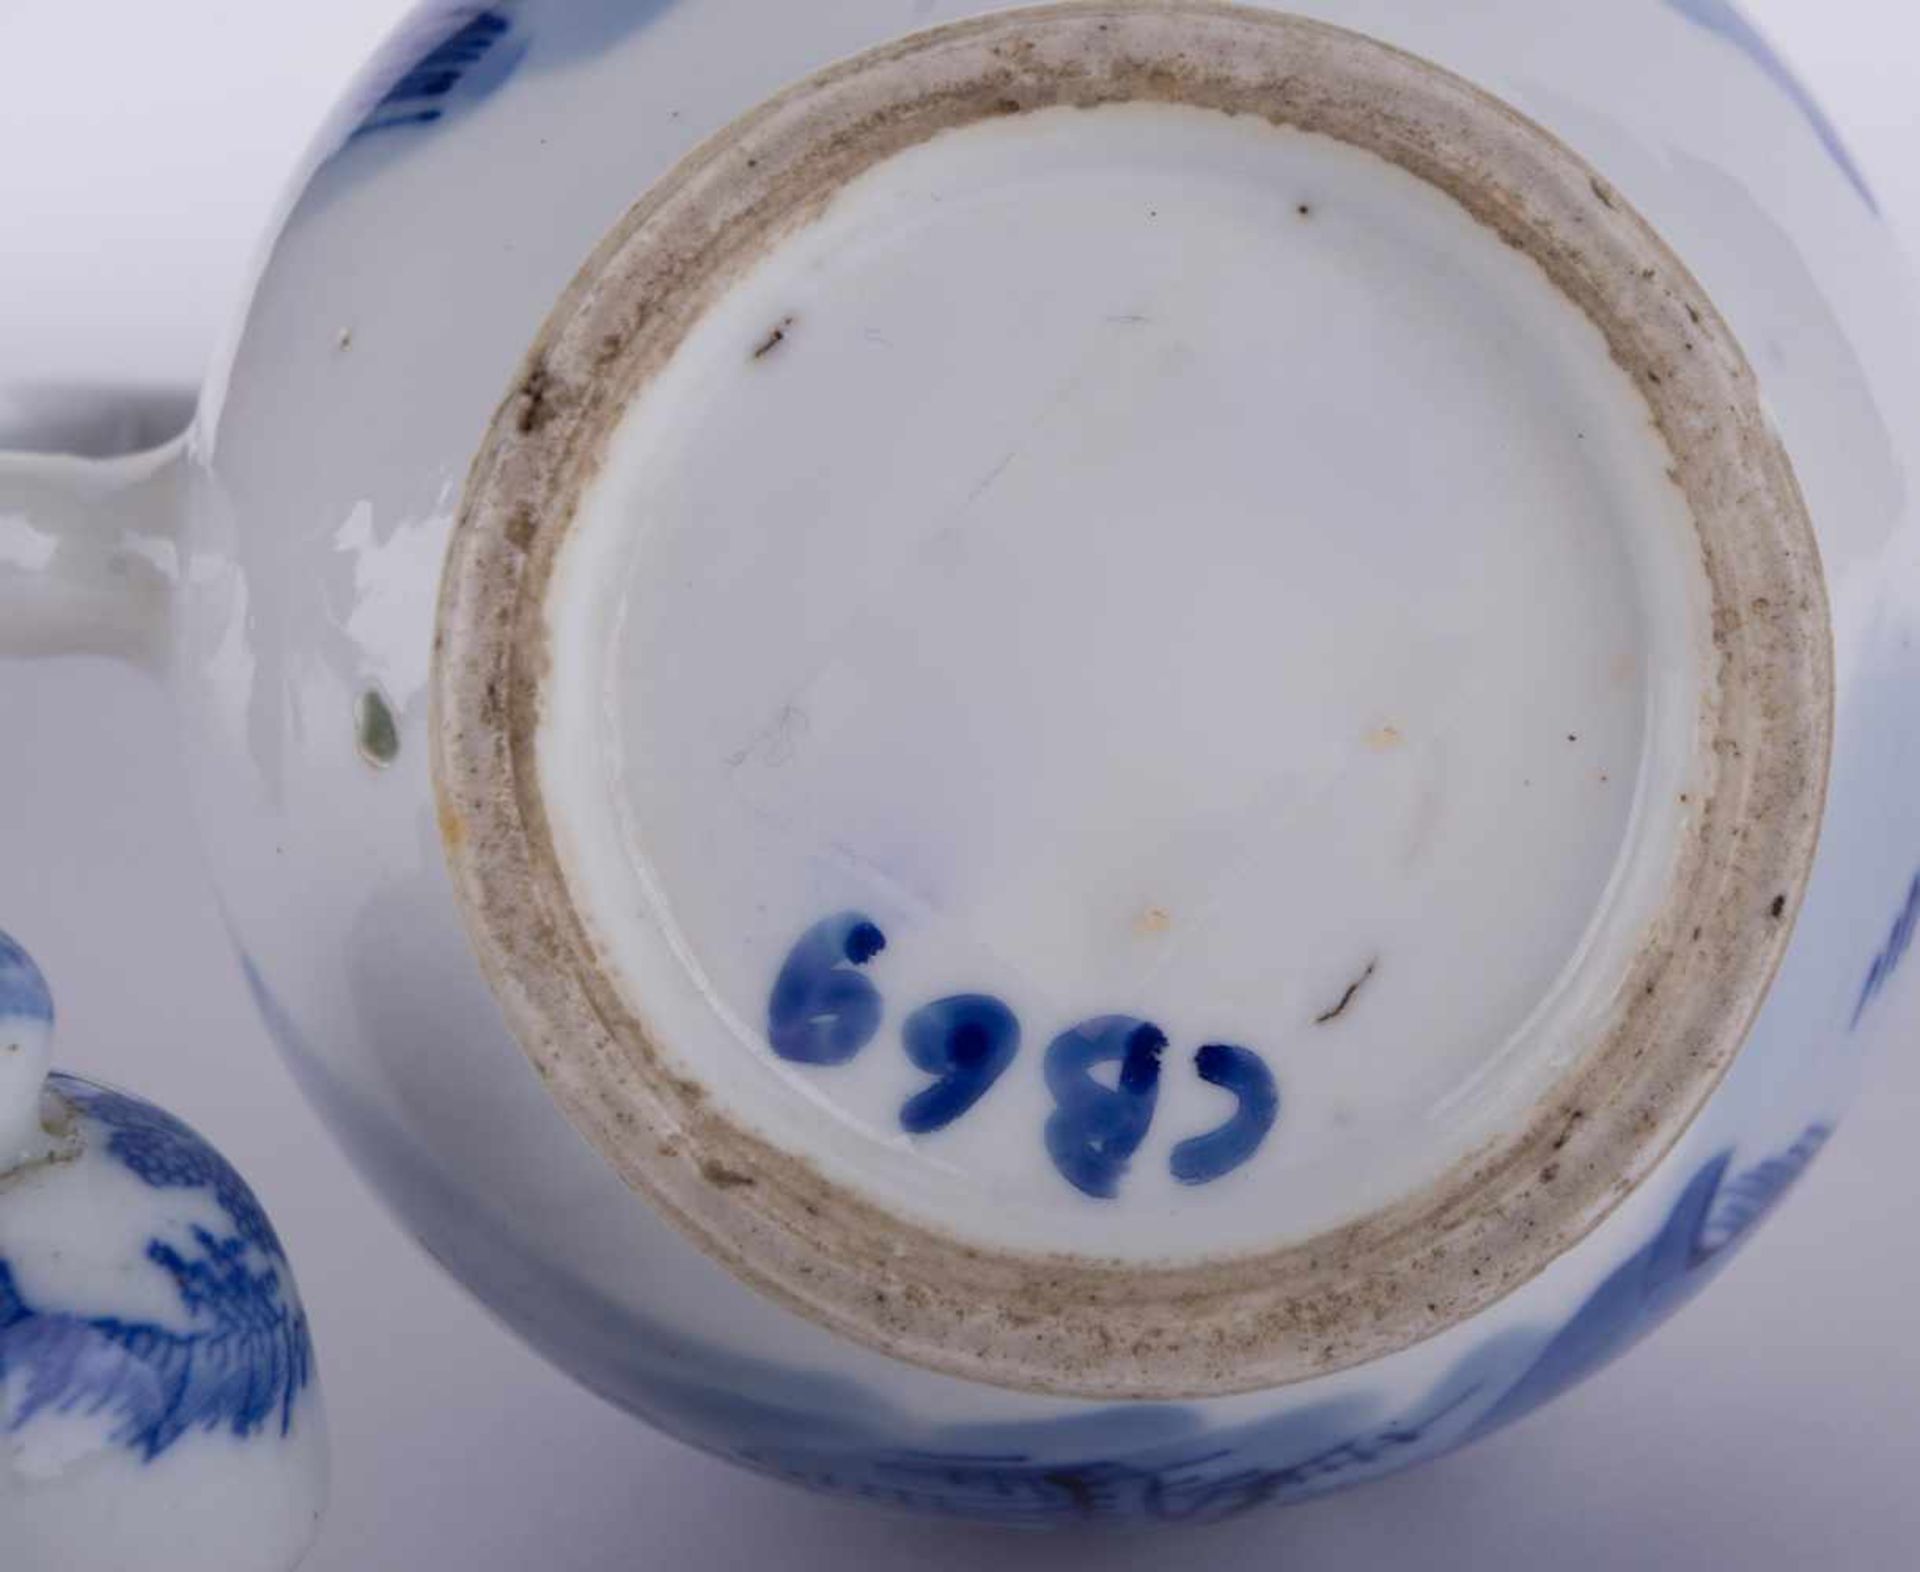 Kanne China 19. Jhd. / Pot, China 19th century blau weiß Malerei, unterm Stand alte Sammlungsnummer, - Image 5 of 5